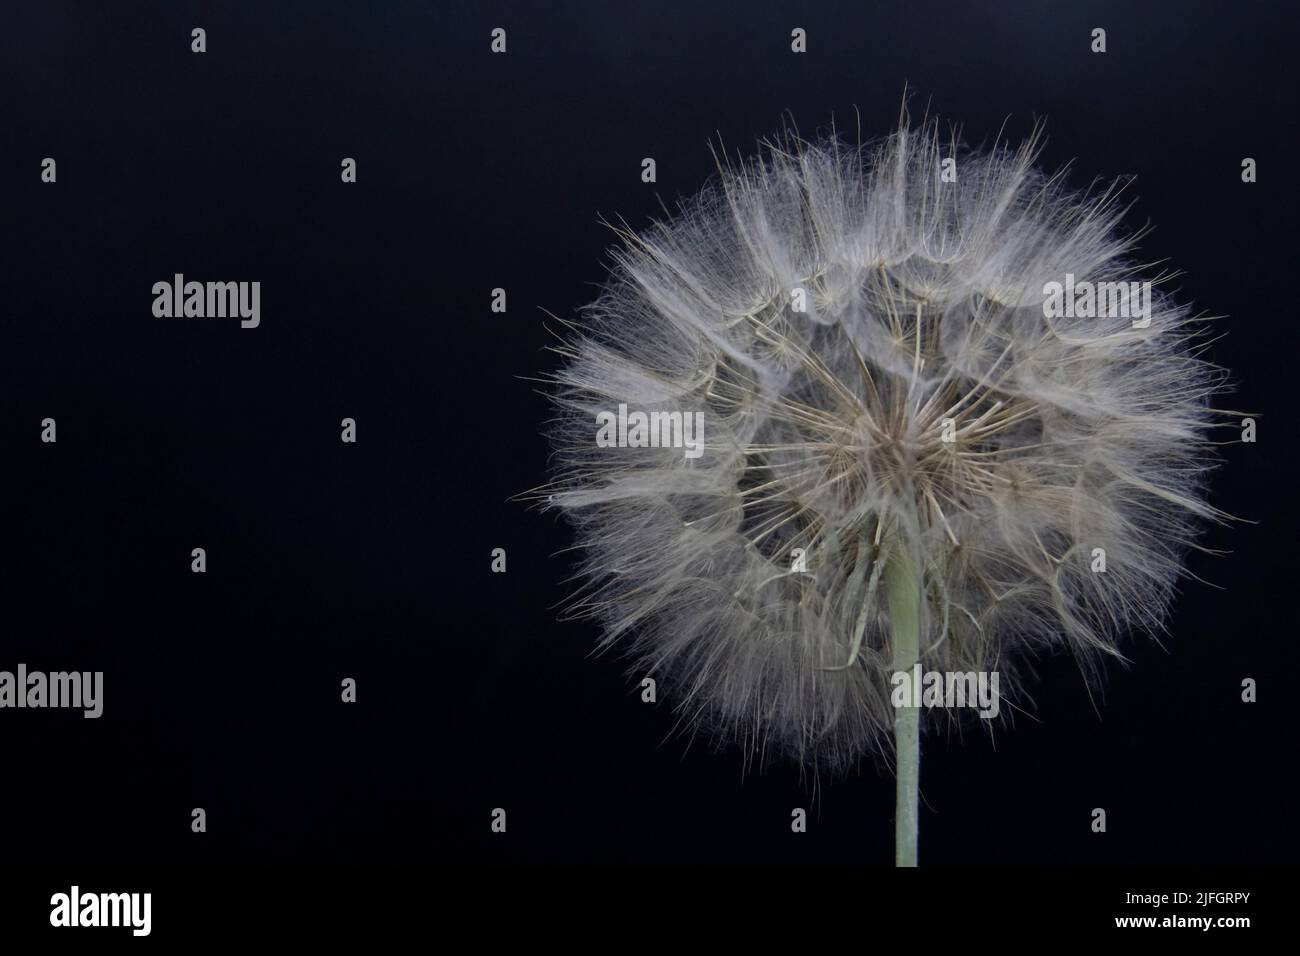 Big beautiful white fluffy dandelion isolated on black background. Stock Photo